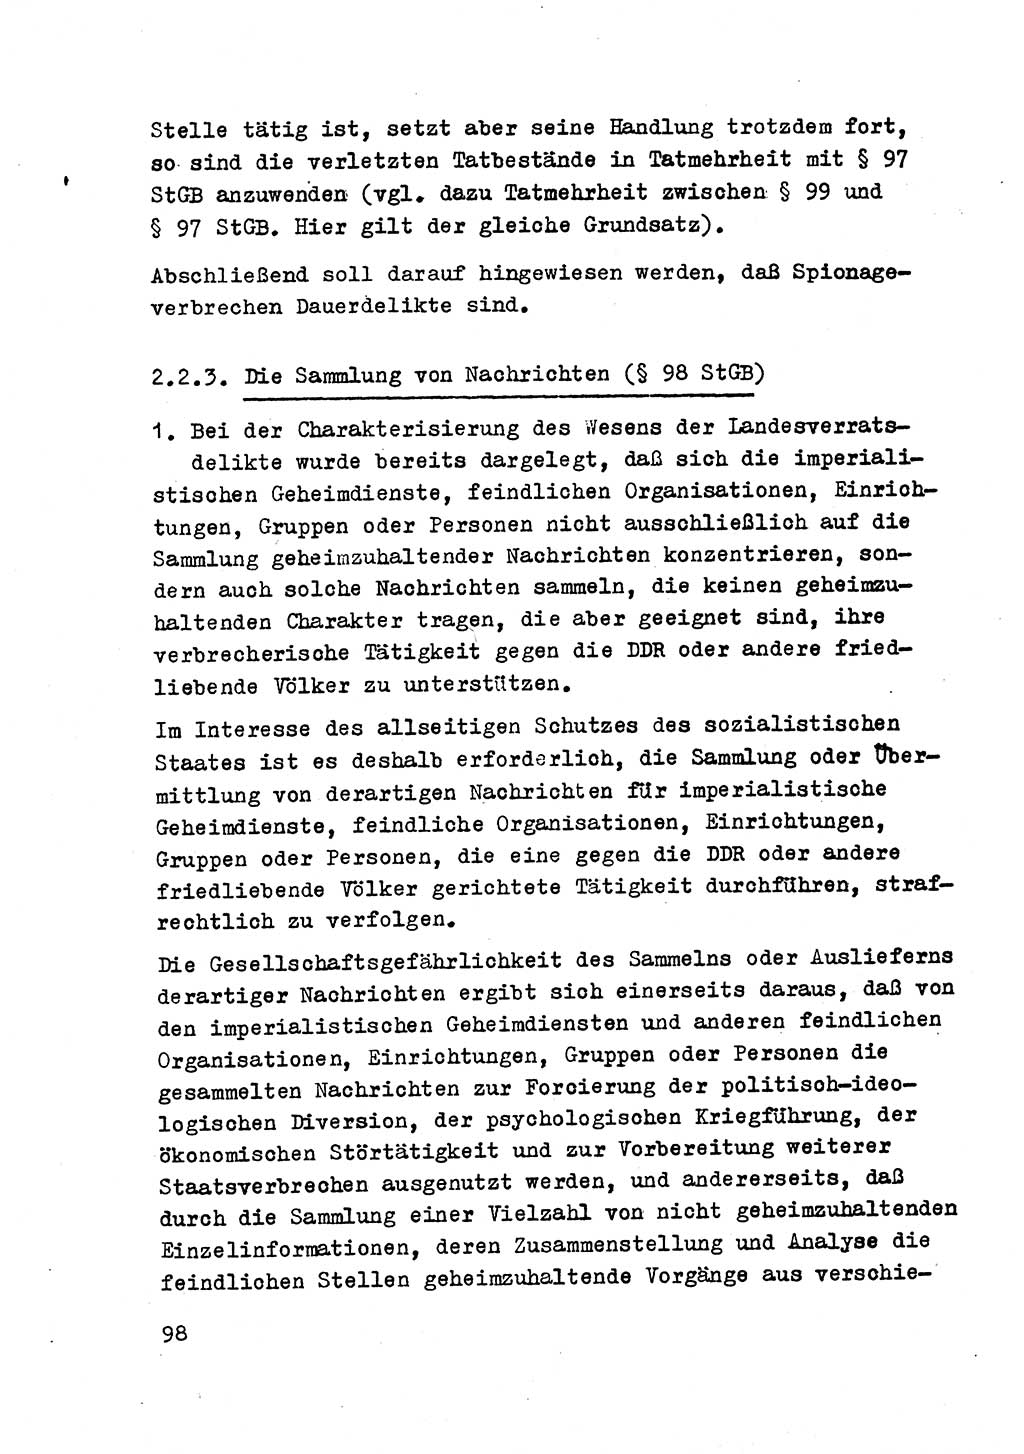 Strafrecht der DDR (Deutsche Demokratische Republik), Besonderer Teil, Lehrmaterial, Heft 2 1969, Seite 98 (Strafr. DDR BT Lehrmat. H. 2 1969, S. 98)